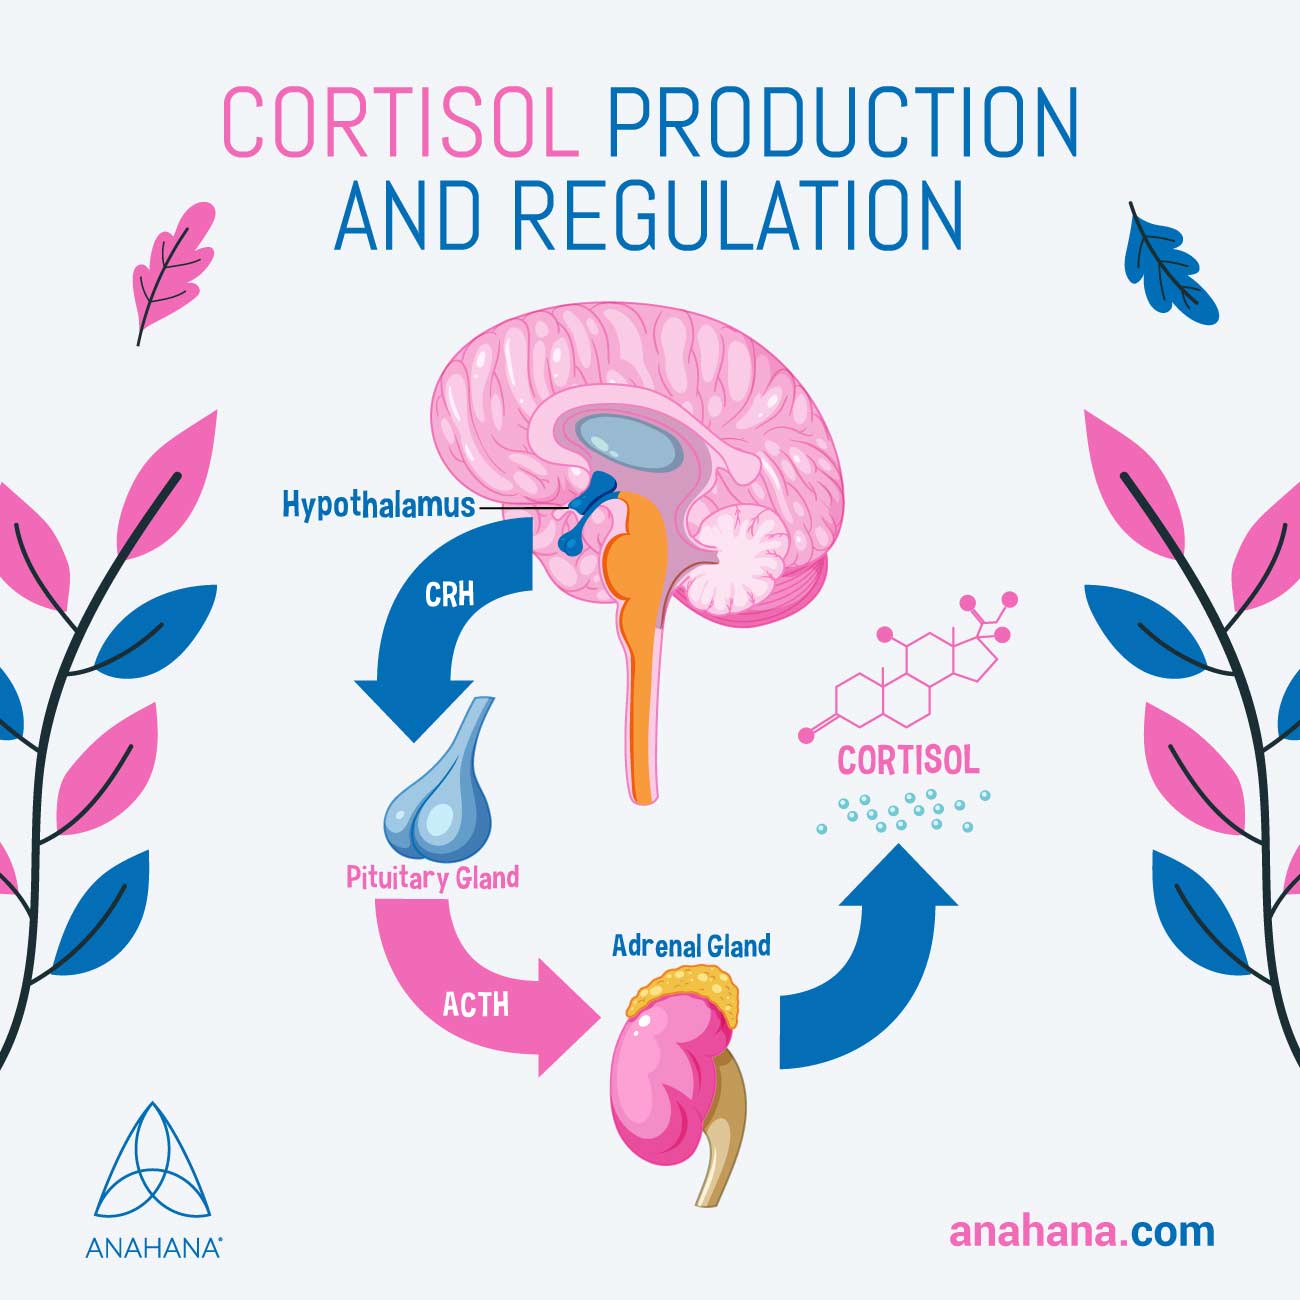 la production et la régulation du cortisol expliquées